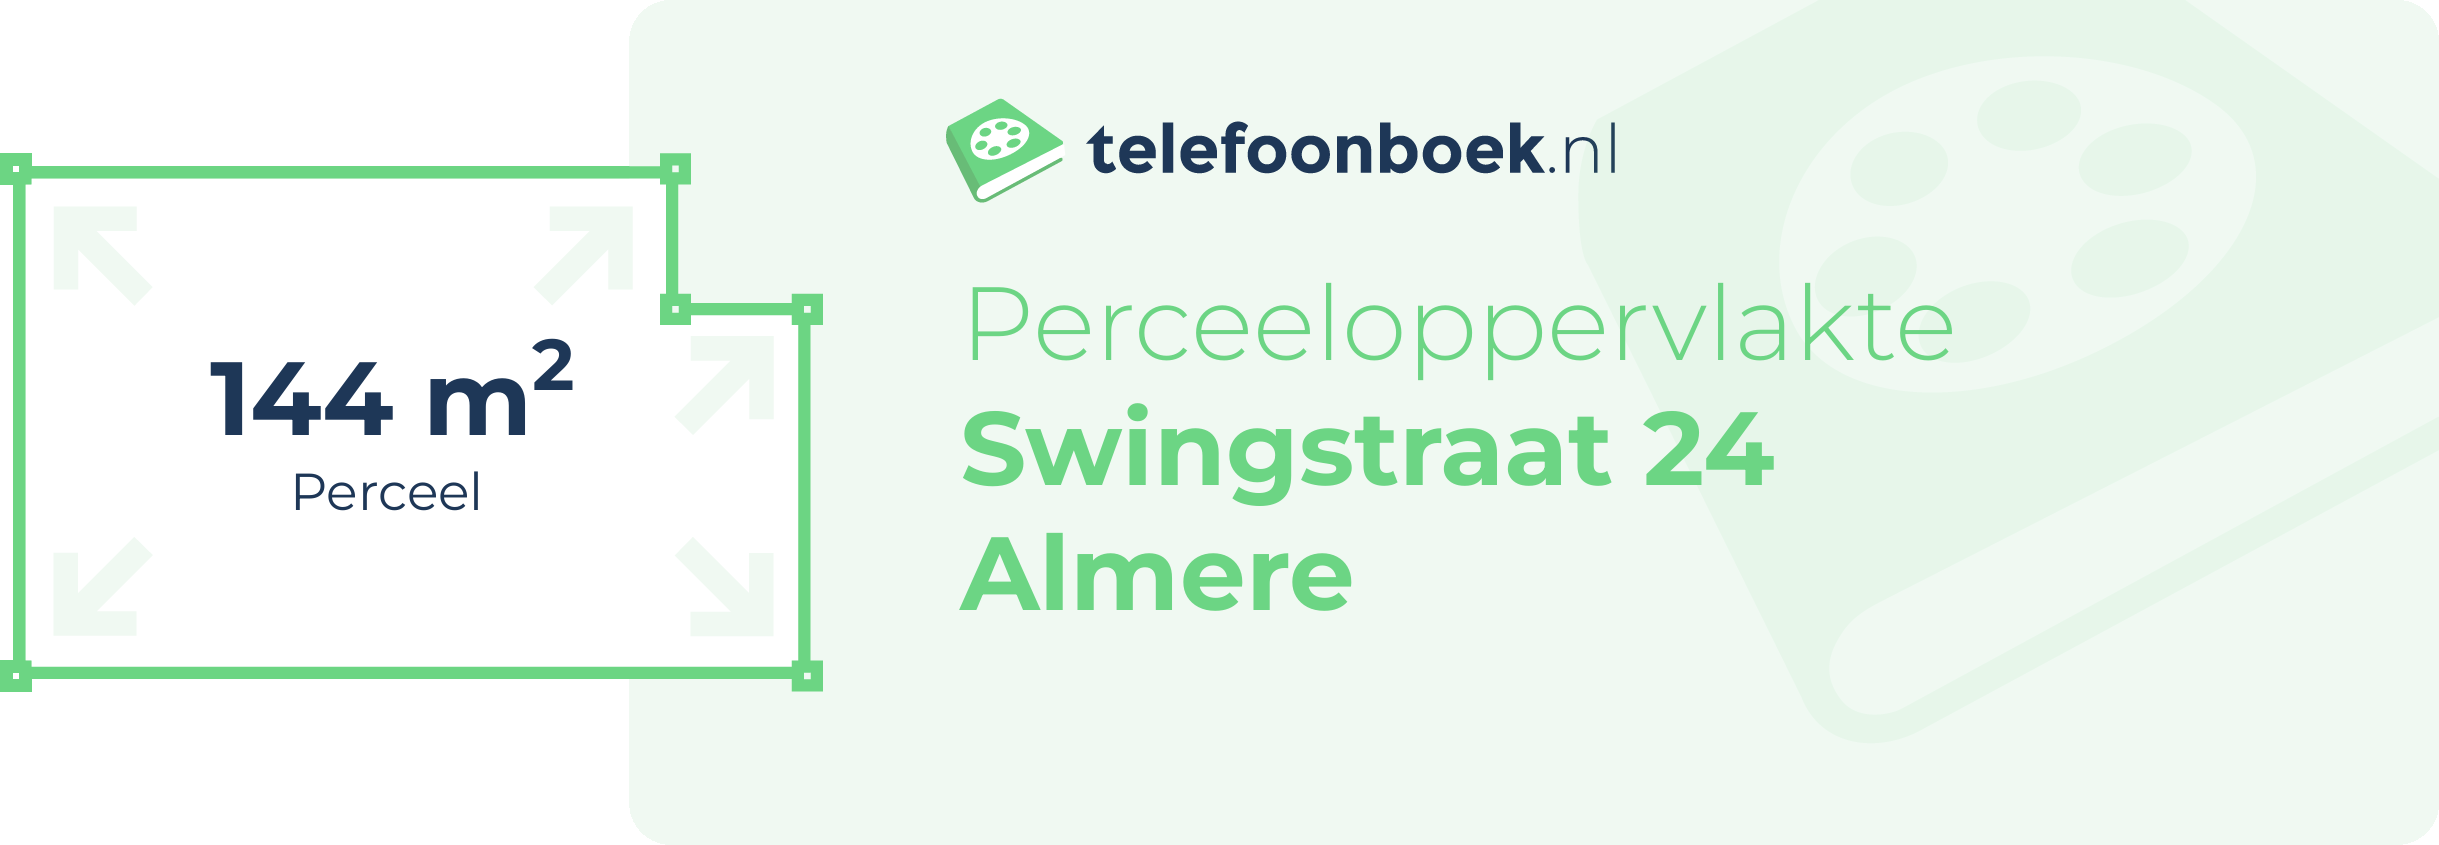 Perceeloppervlakte Swingstraat 24 Almere